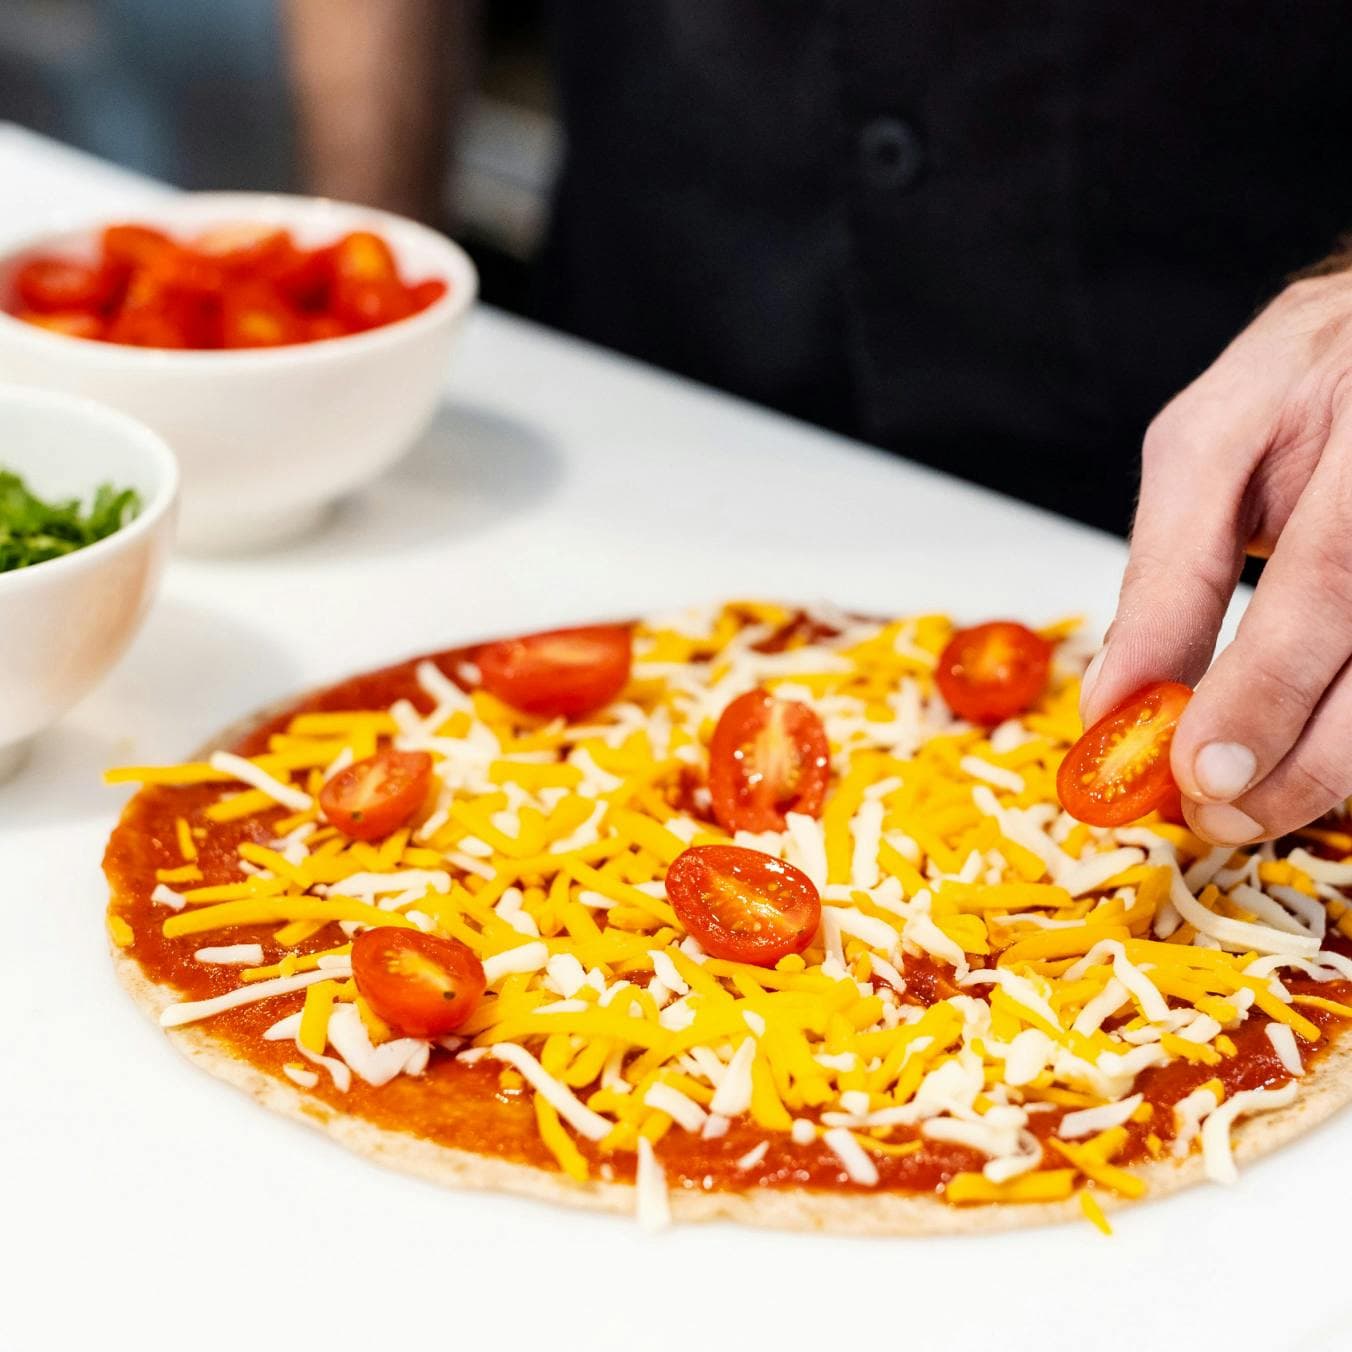 tomato pizza being prepared